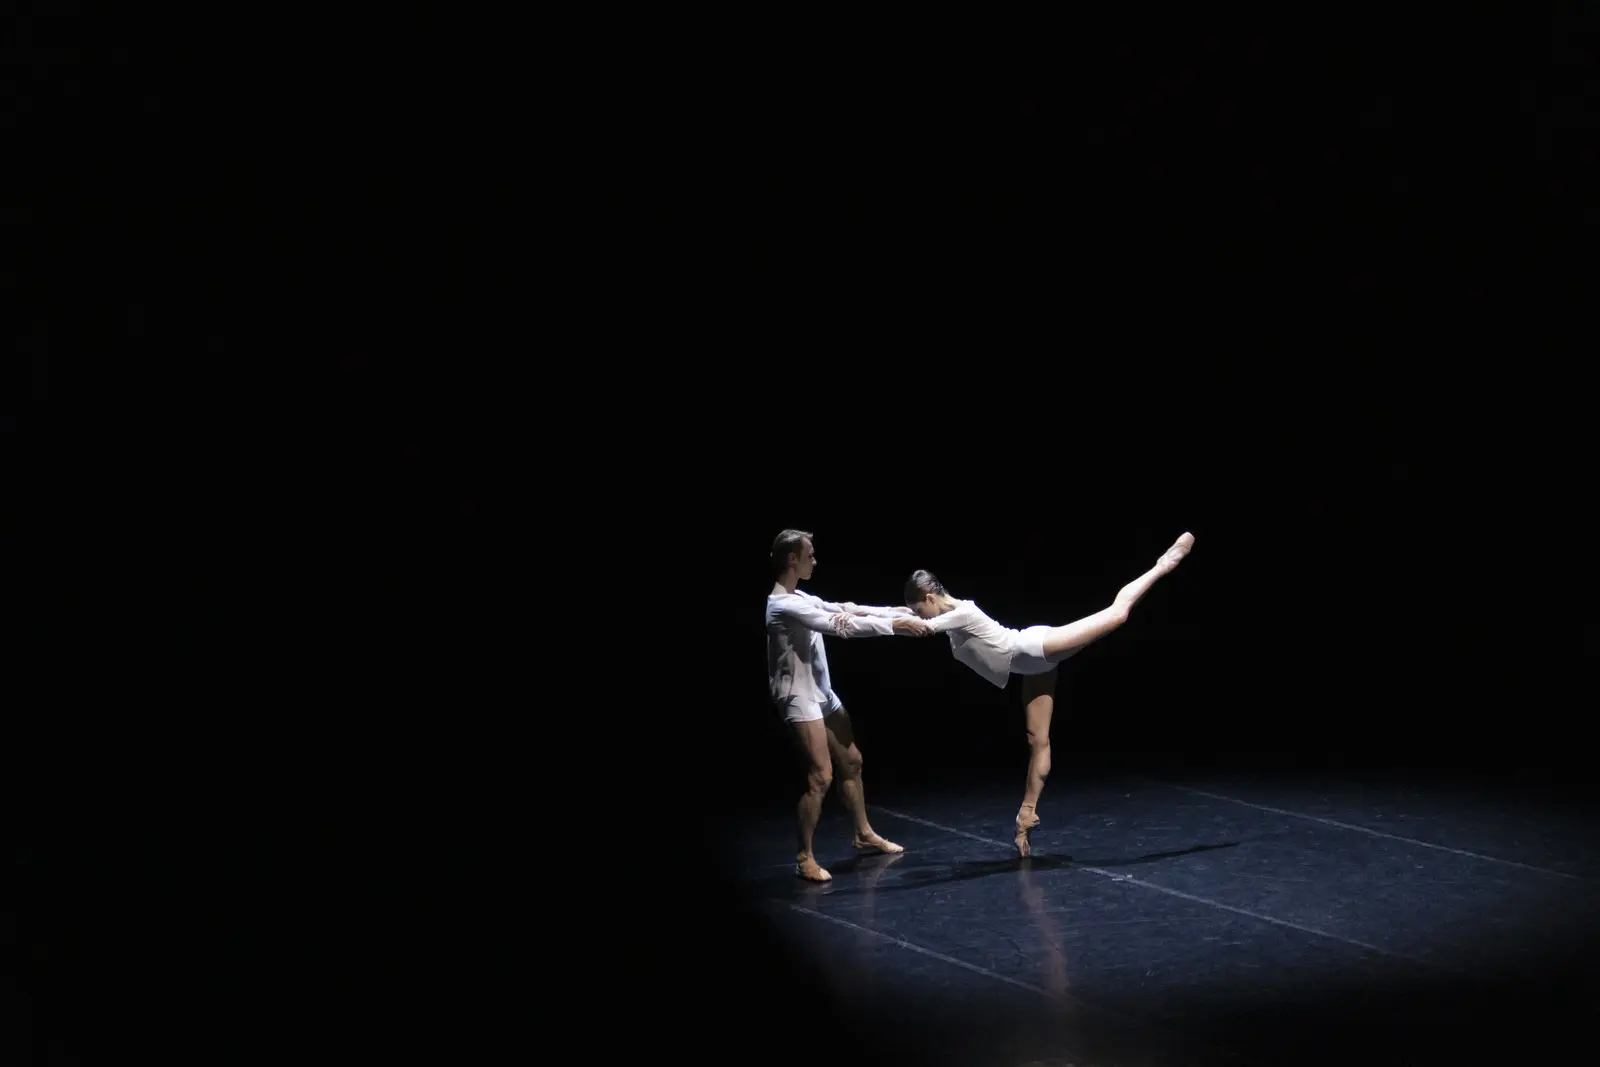 Salone del Mobile Teatro alla Scala Foundation ballet Do you speak design? performance theatre stage